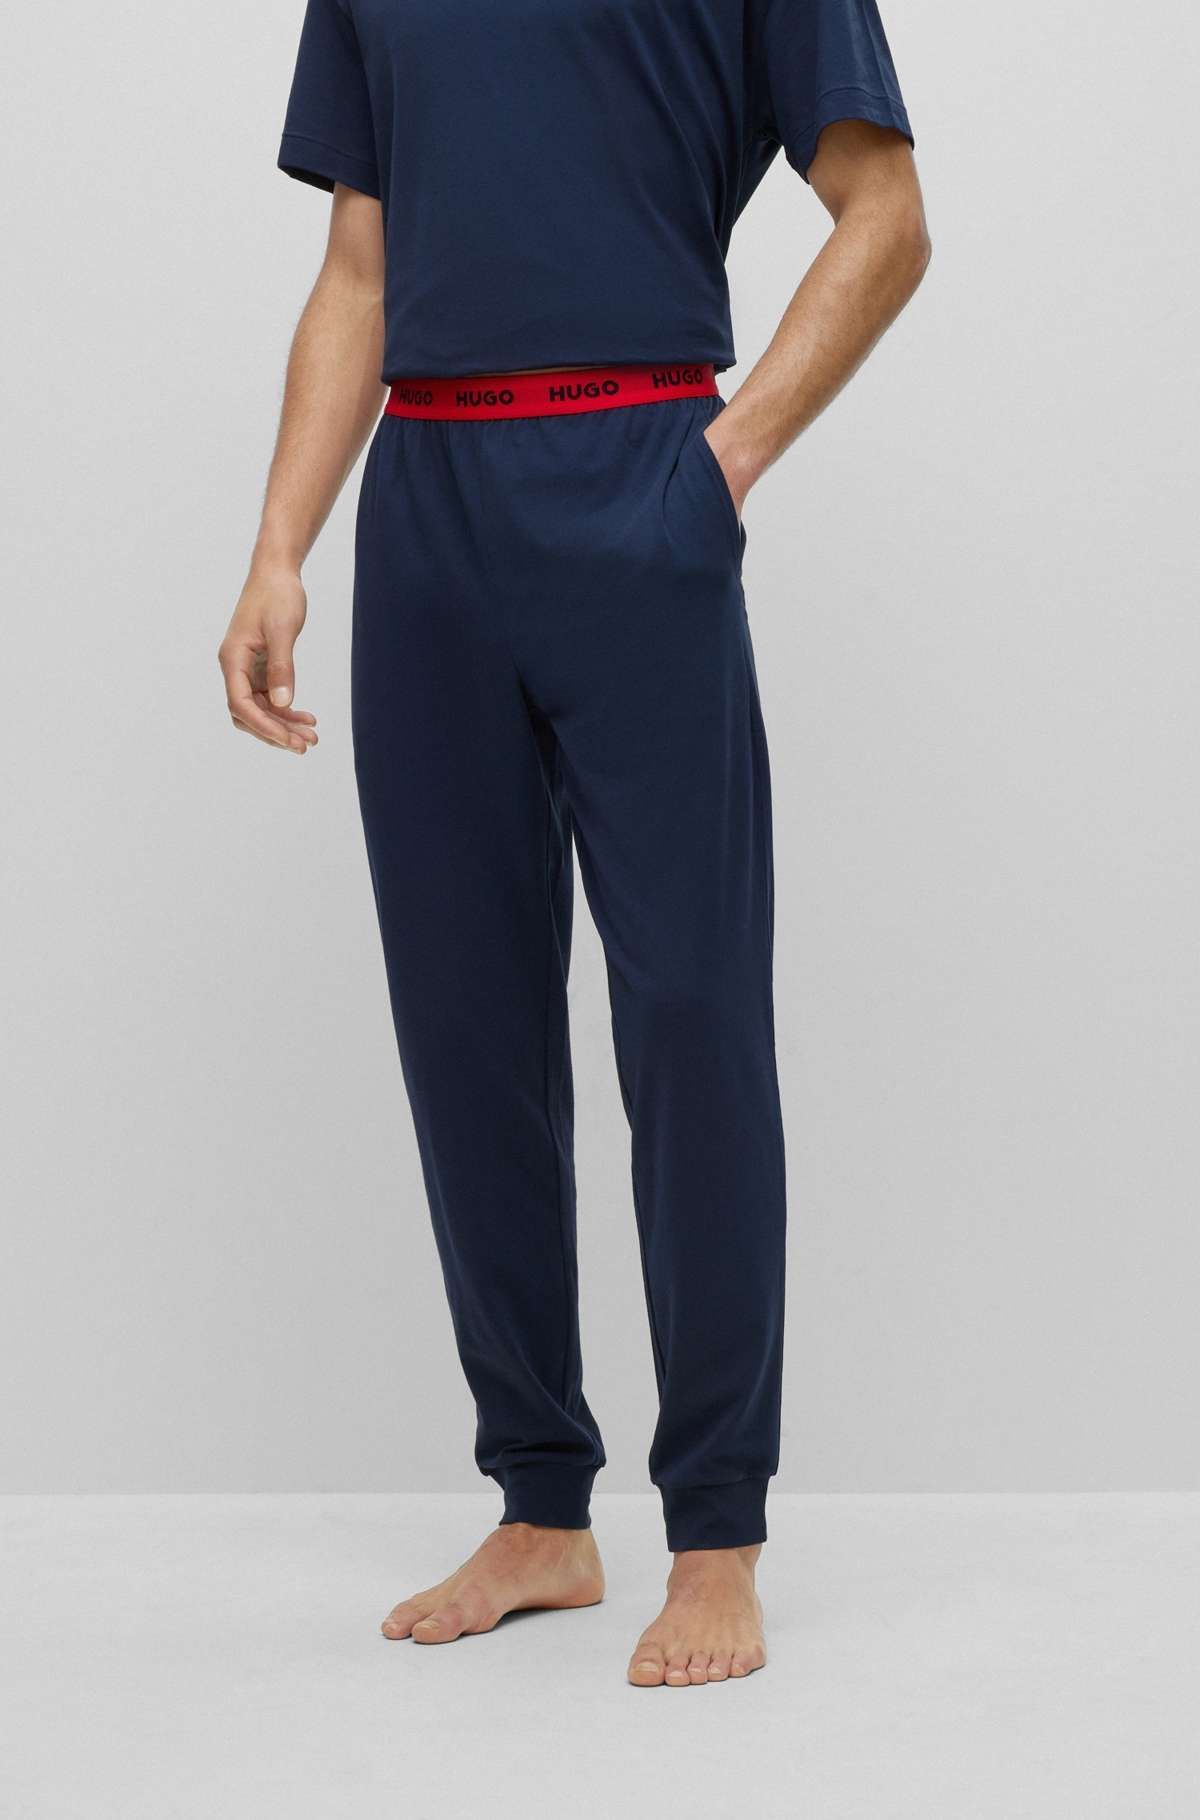 Пижамные брюки с контрастным эластичным поясом с логотипом.